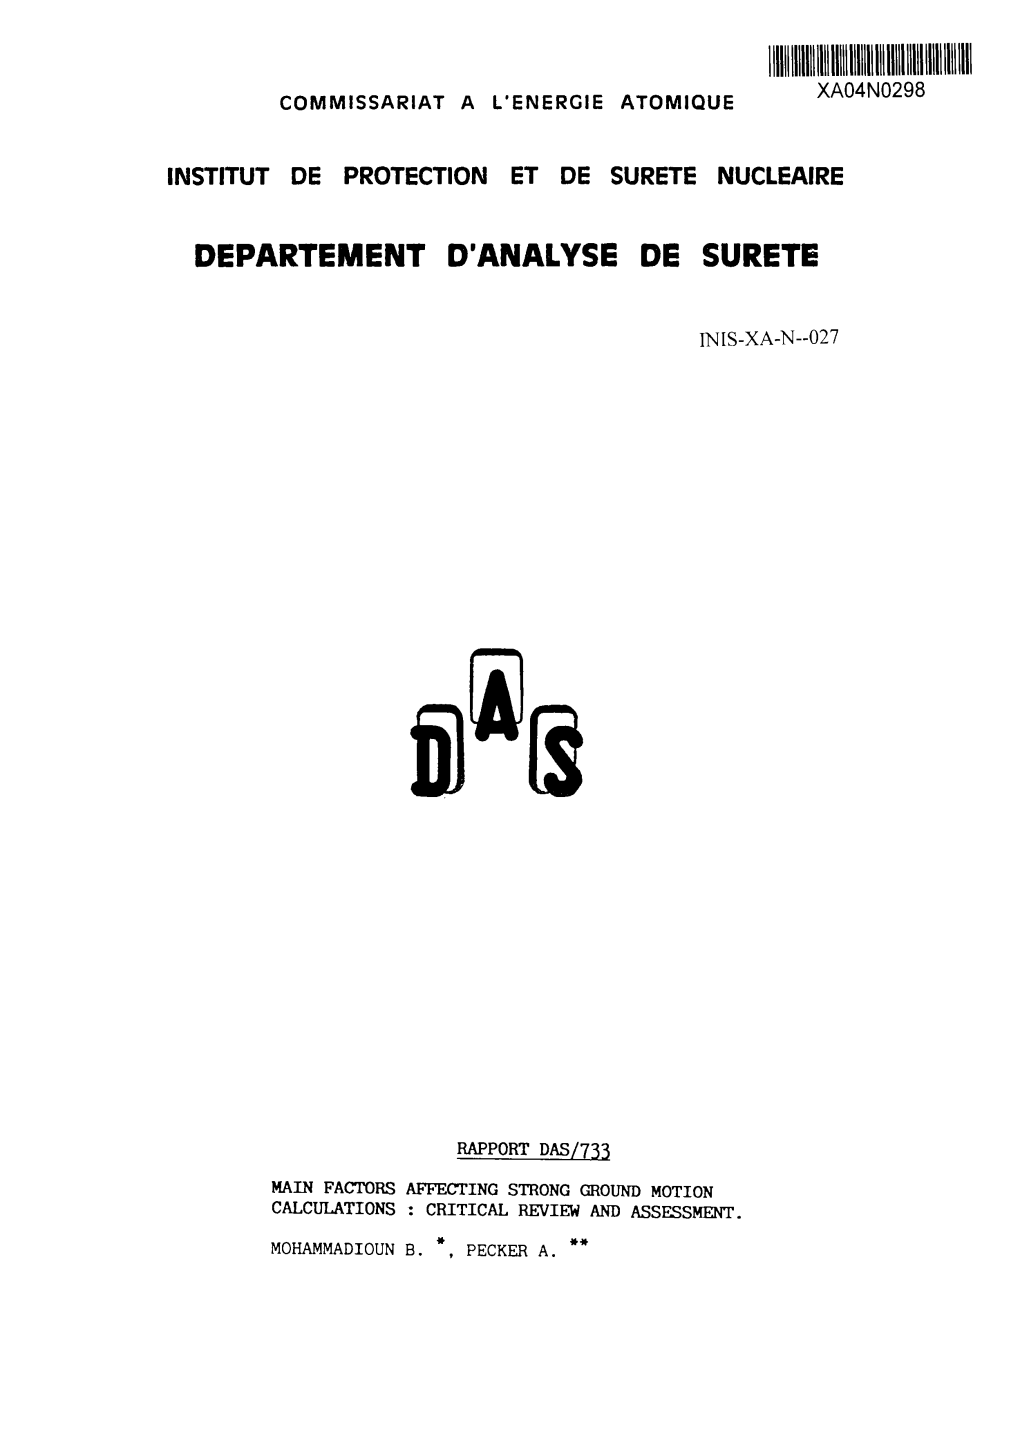 Department D'analyse De Surete